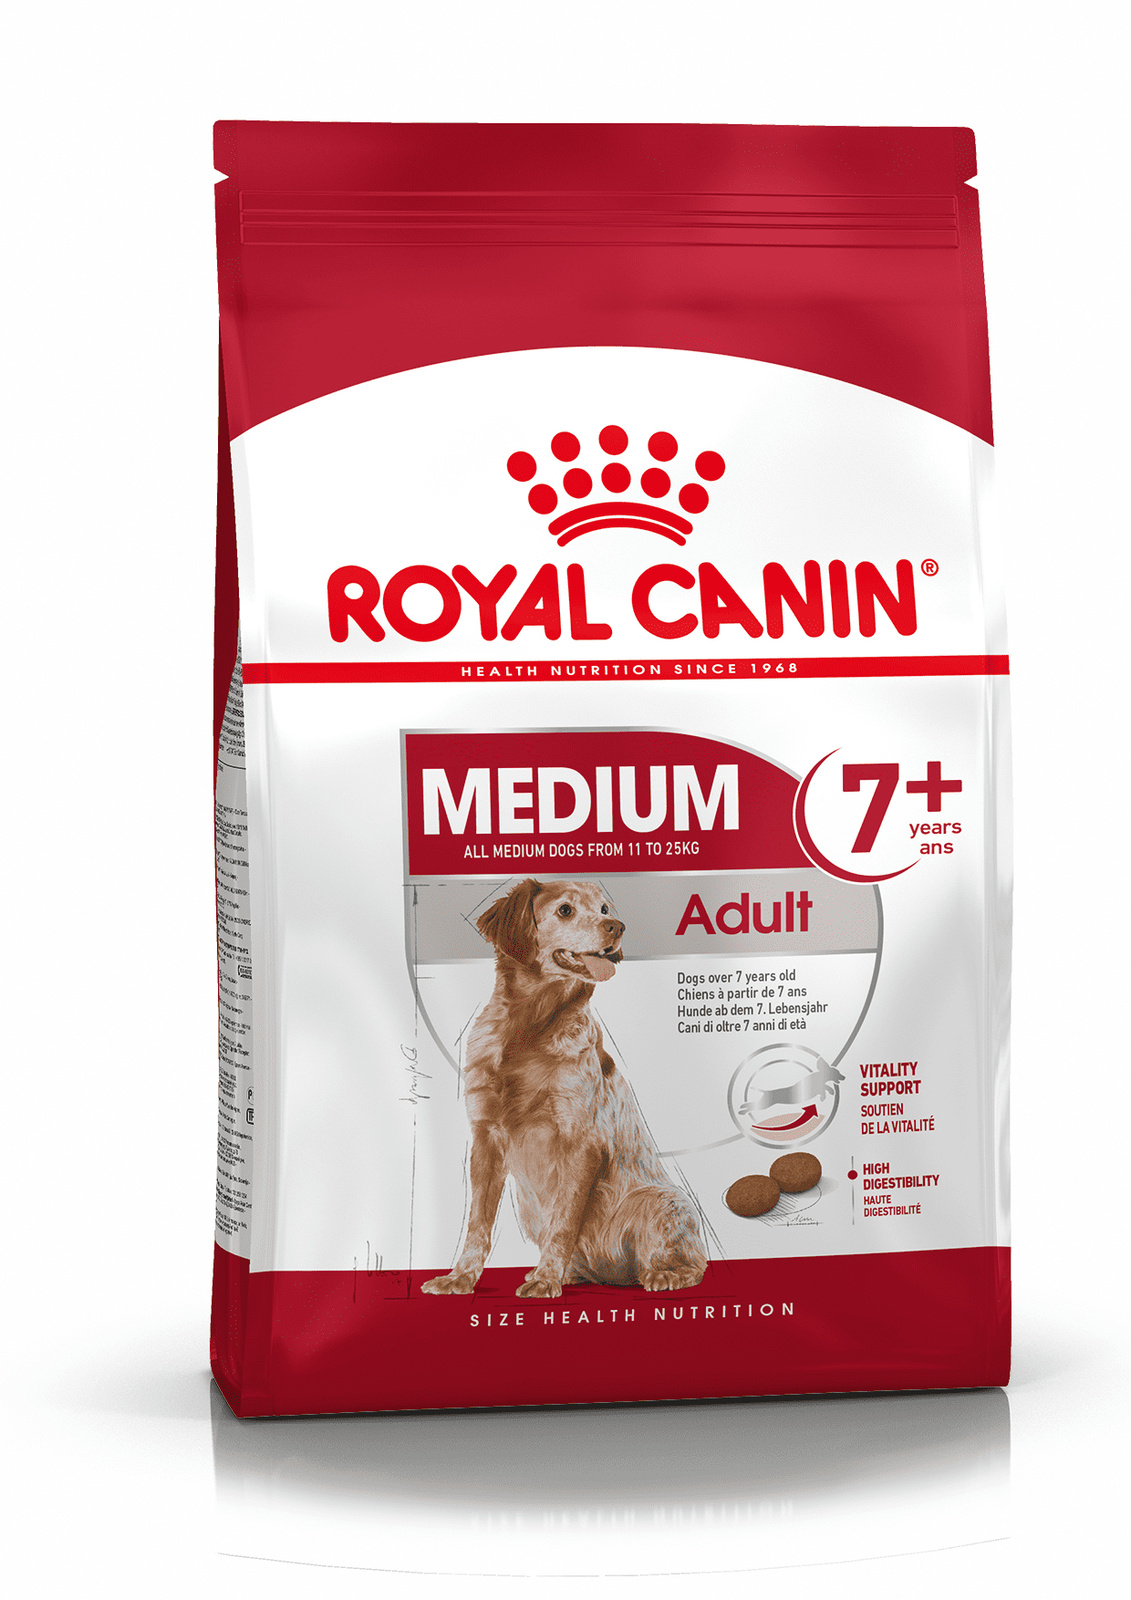 Royal Canin Корм Royal Canin корм для пожилых собак средних размеров: 11-25 кг, 7-10 лет (4 кг)